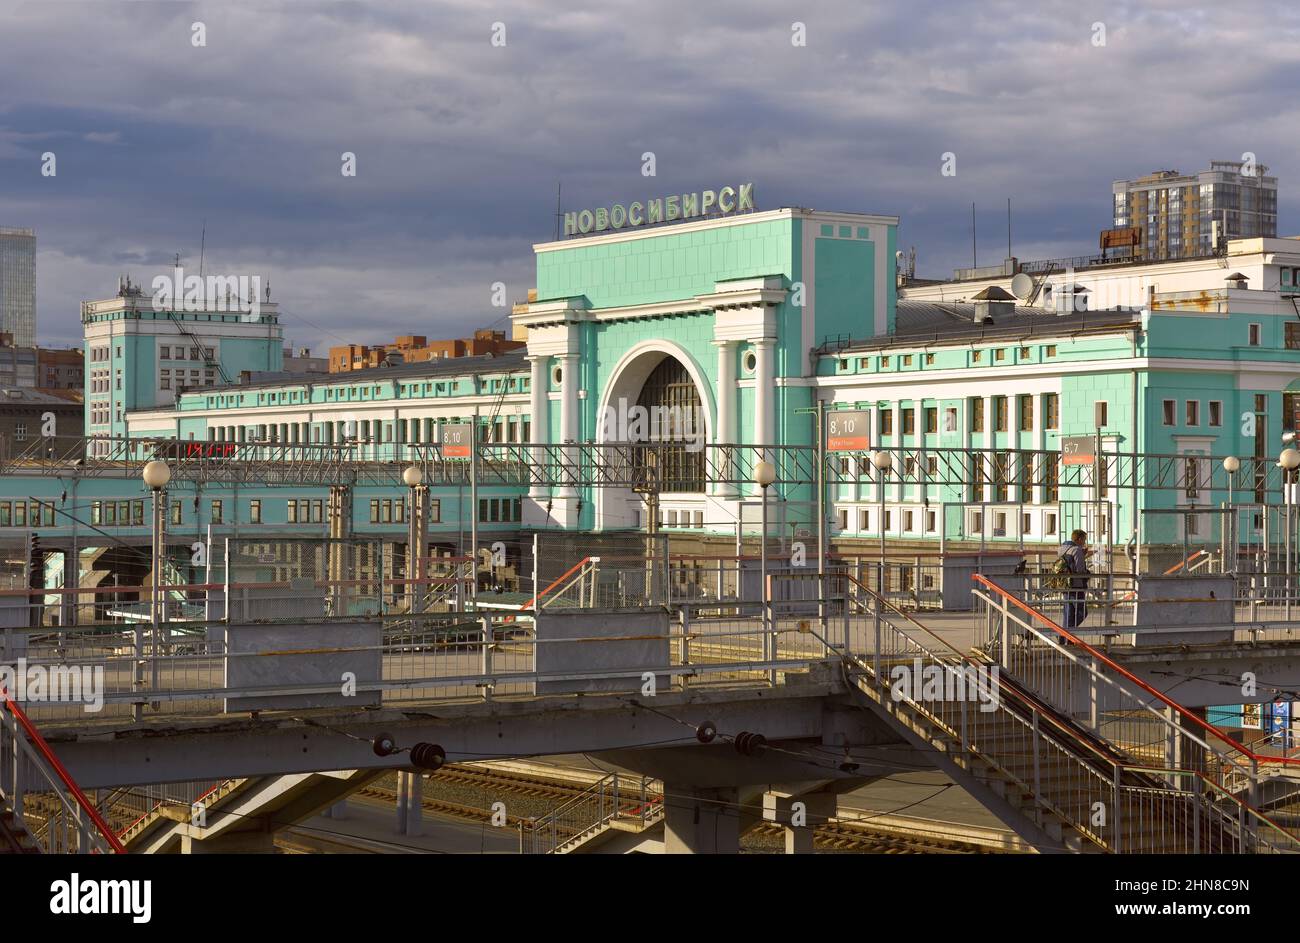 Novosibirsk, Siberia, Russia - 05.25.2020: La costruzione della più grande stazione ferroviaria in Siberia in stile costruttivista, un monume architettonico Foto Stock